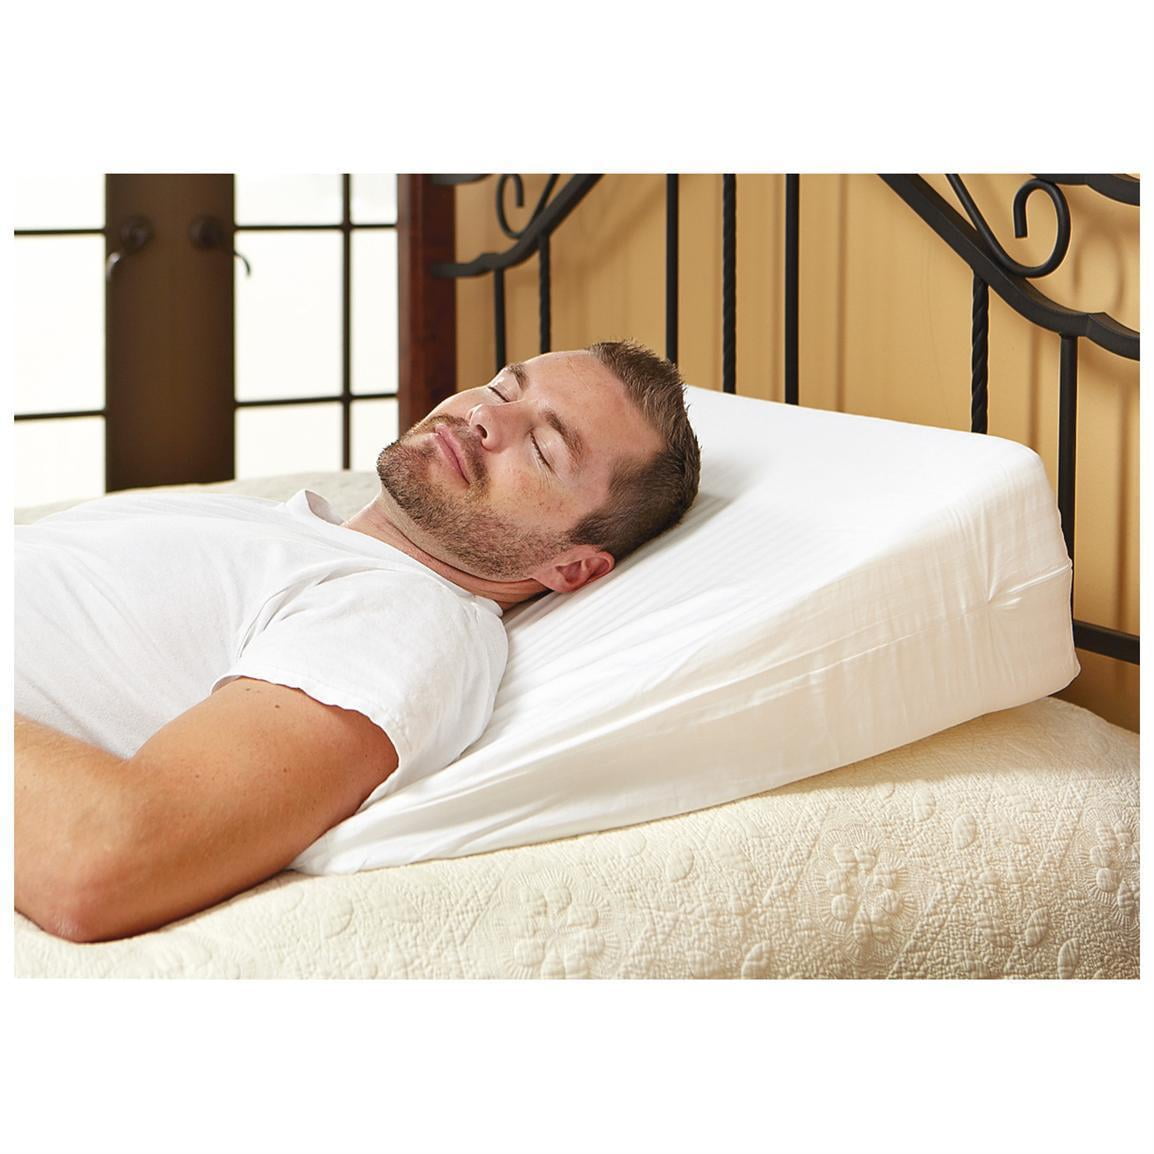 Luxury Foam Wedge Pillow Support Sleep Pillow Acid Reflux Wedge Pillow Walmart Com Walmart Com